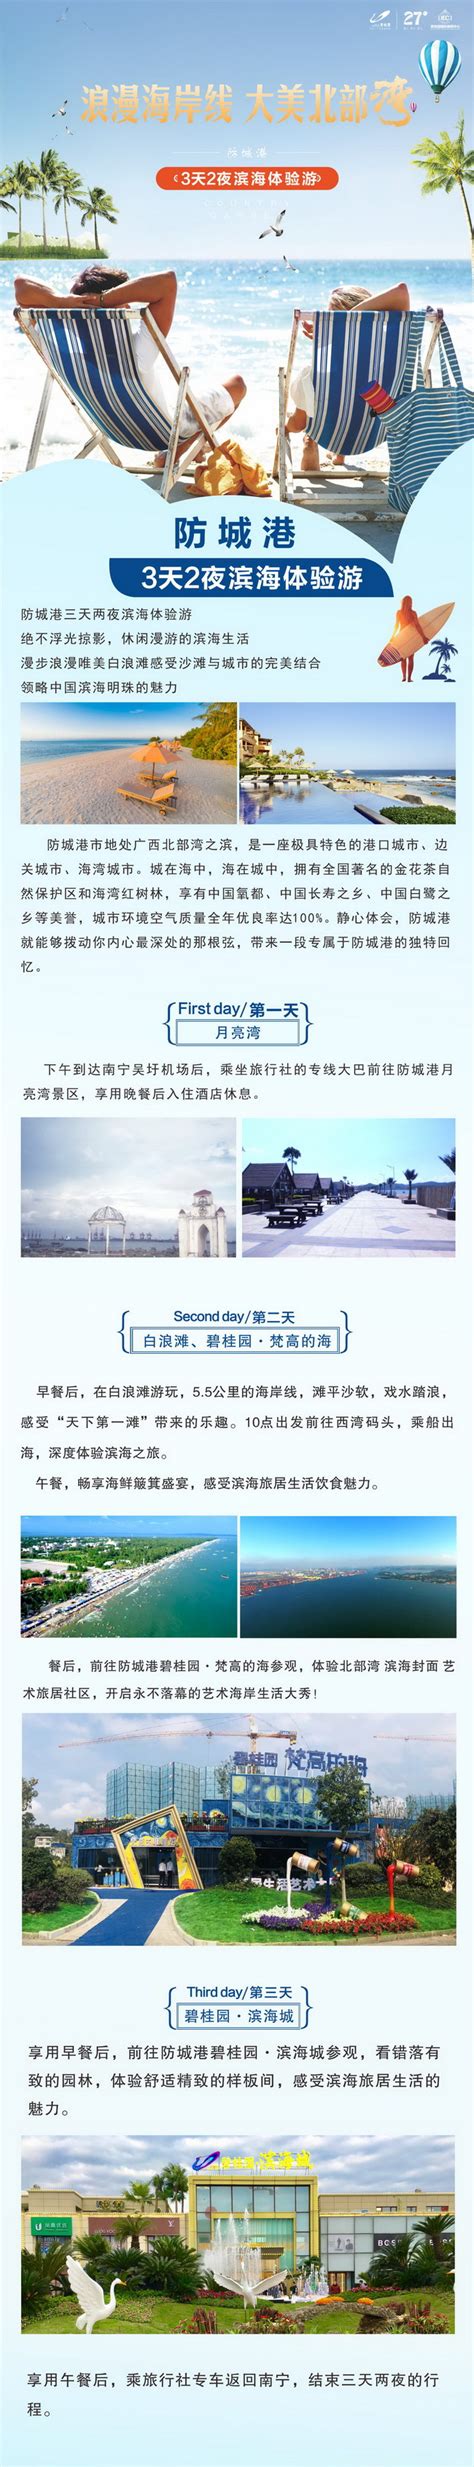 防城港 3天2夜滨海体验游 - 碧桂园国际展销中心